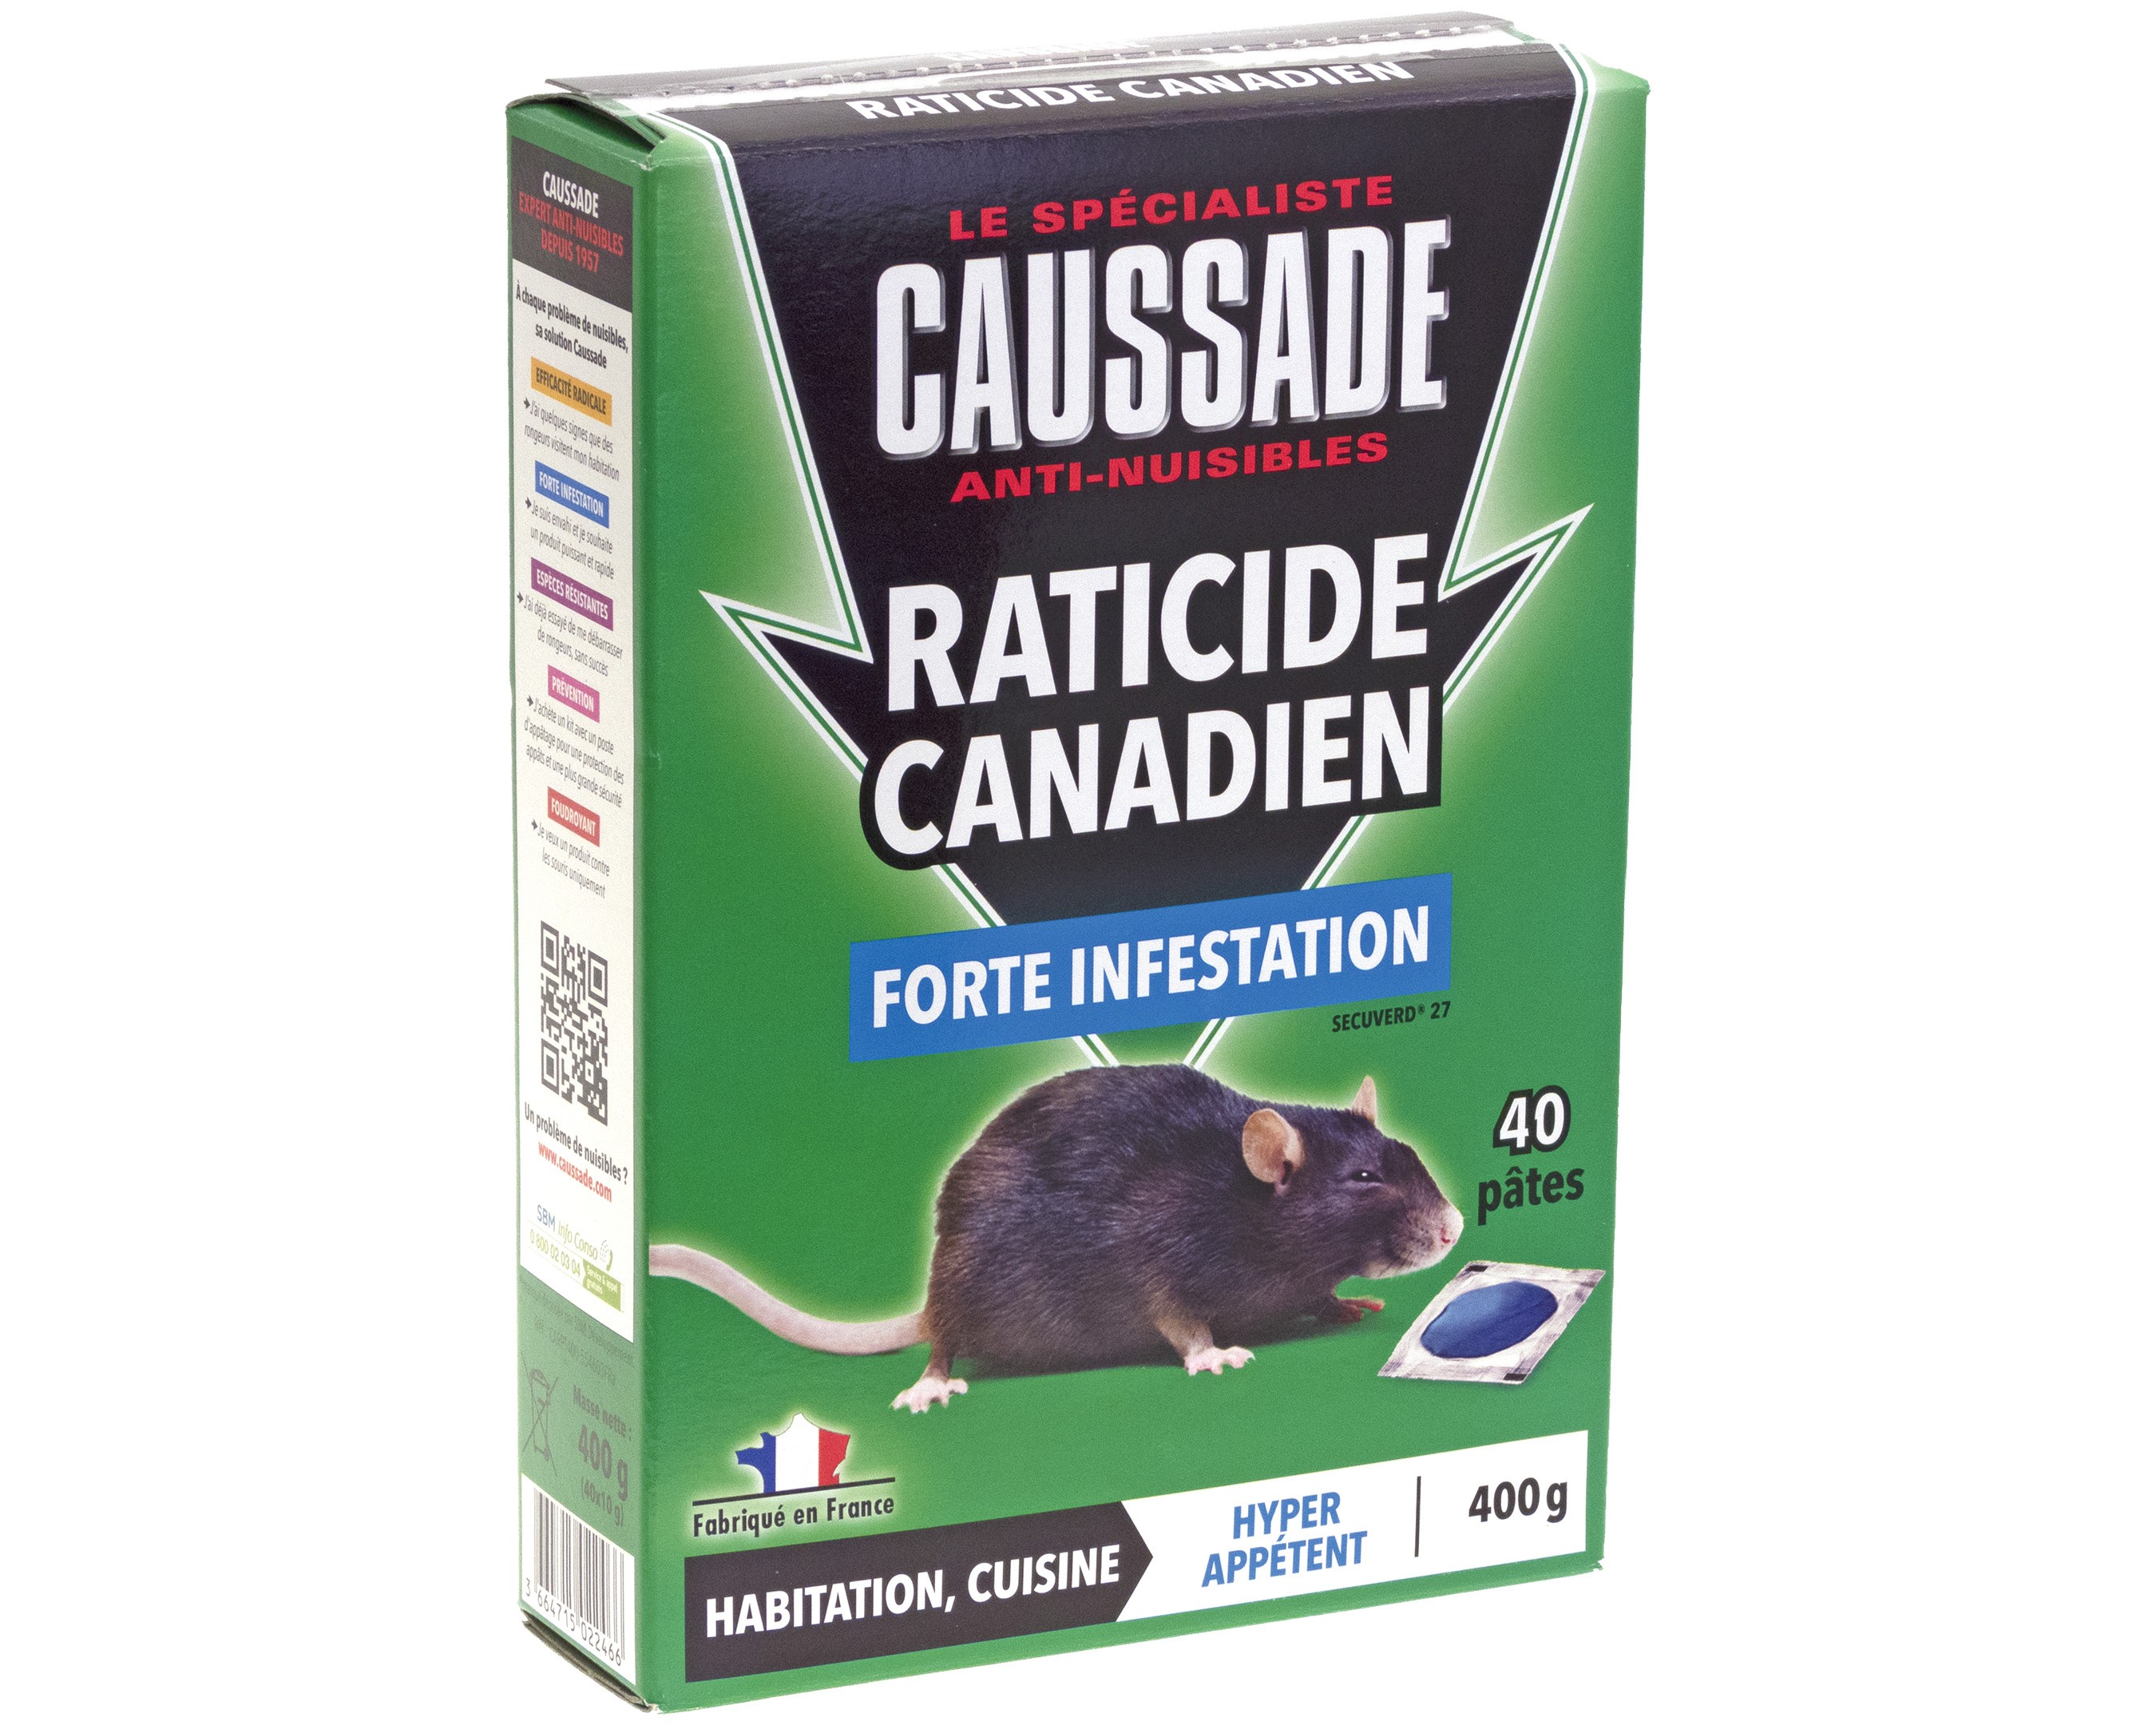 Lot de 2 boites Raticide canadien - Espèces résistantes , boite de